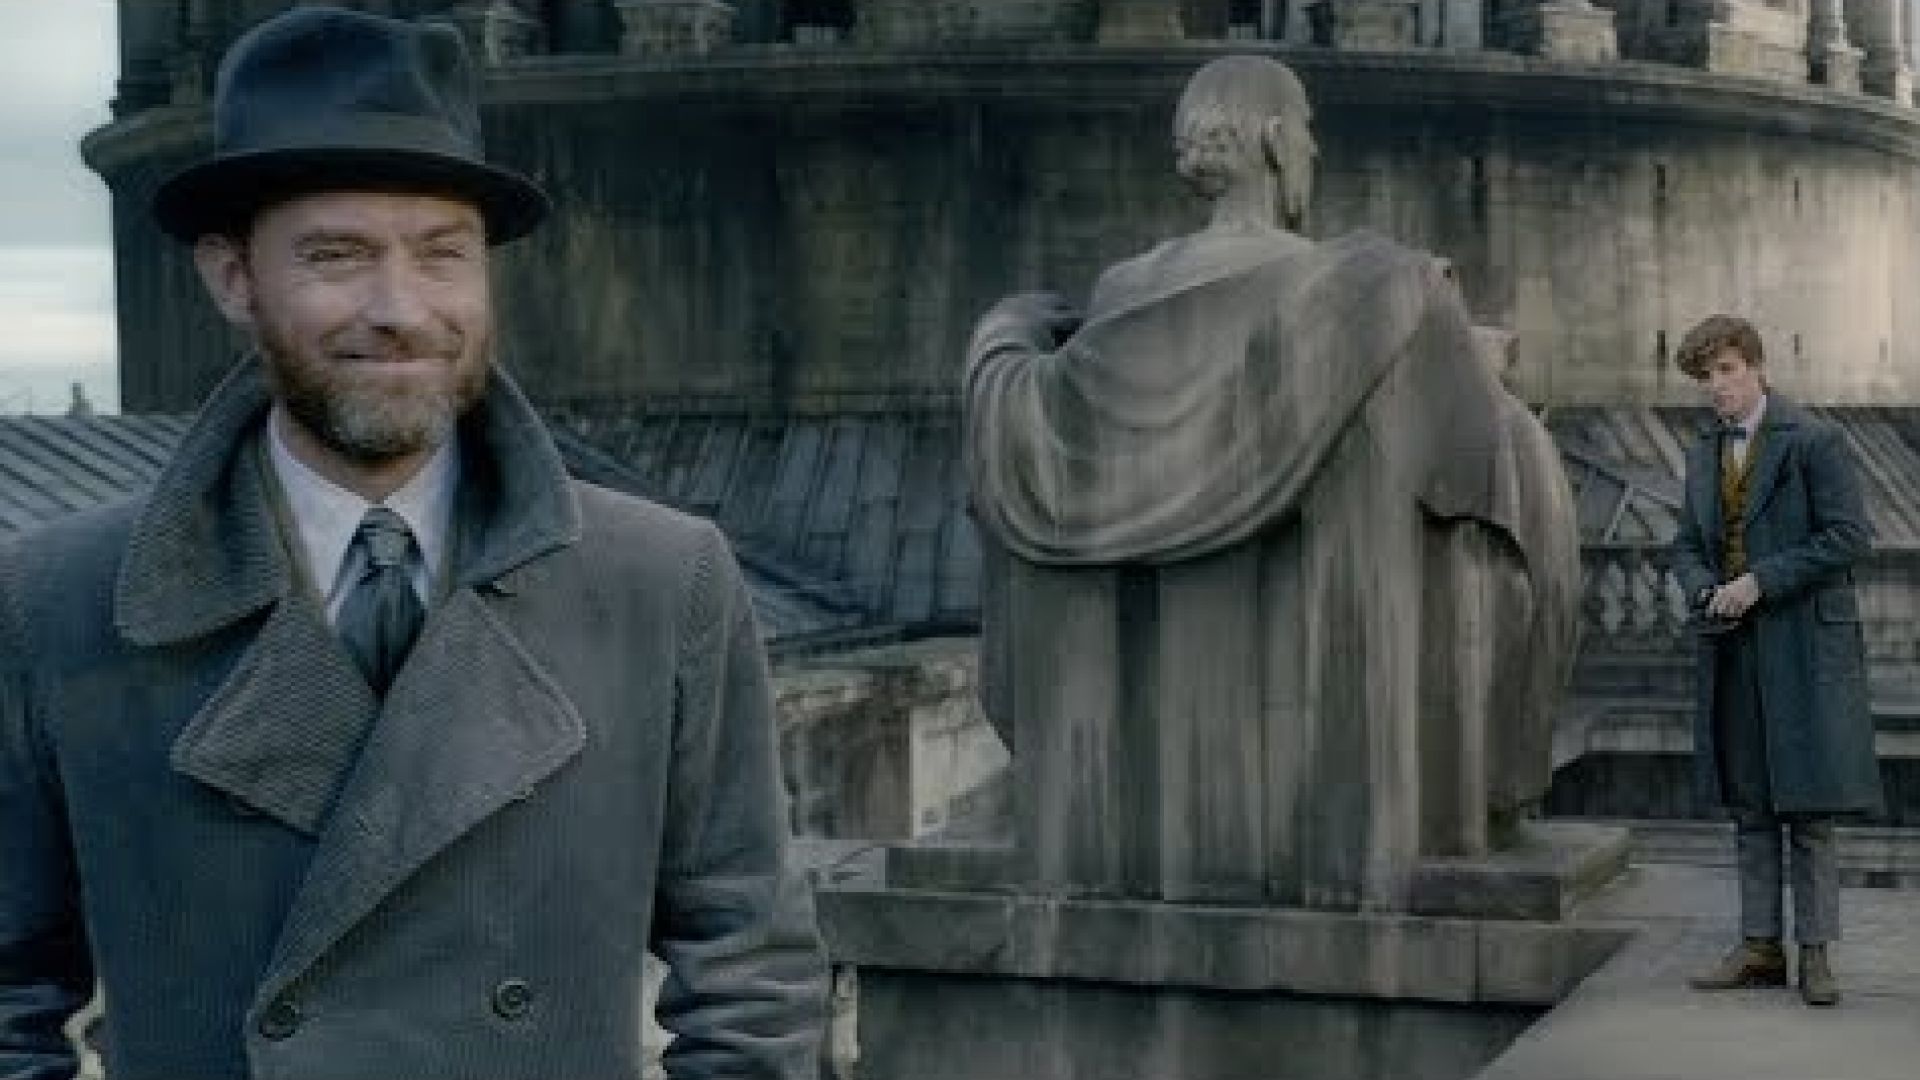 Fantastic Beasts: The Crimes of Grindelwald - Teaser Trailer